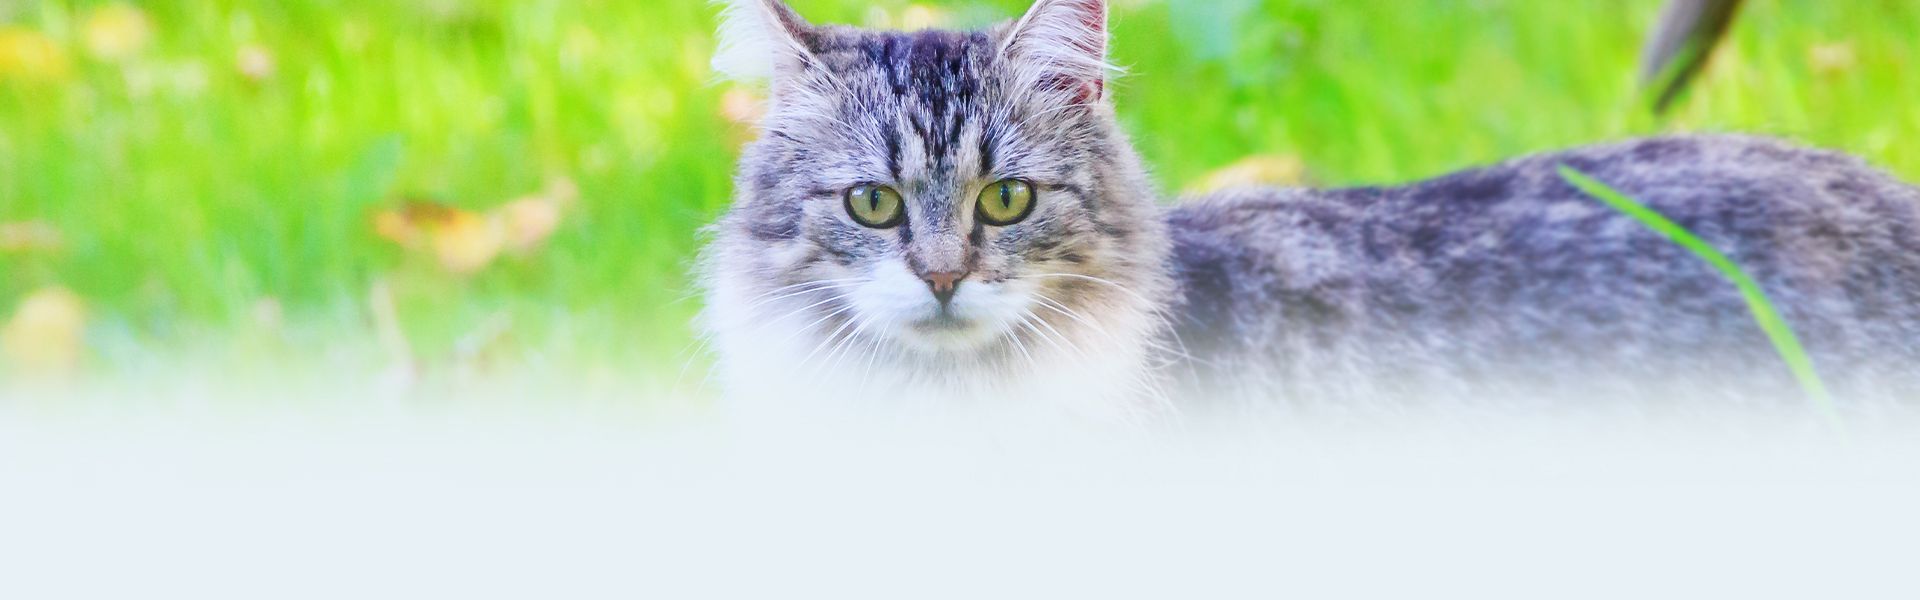 beautiful cat standing on green grass